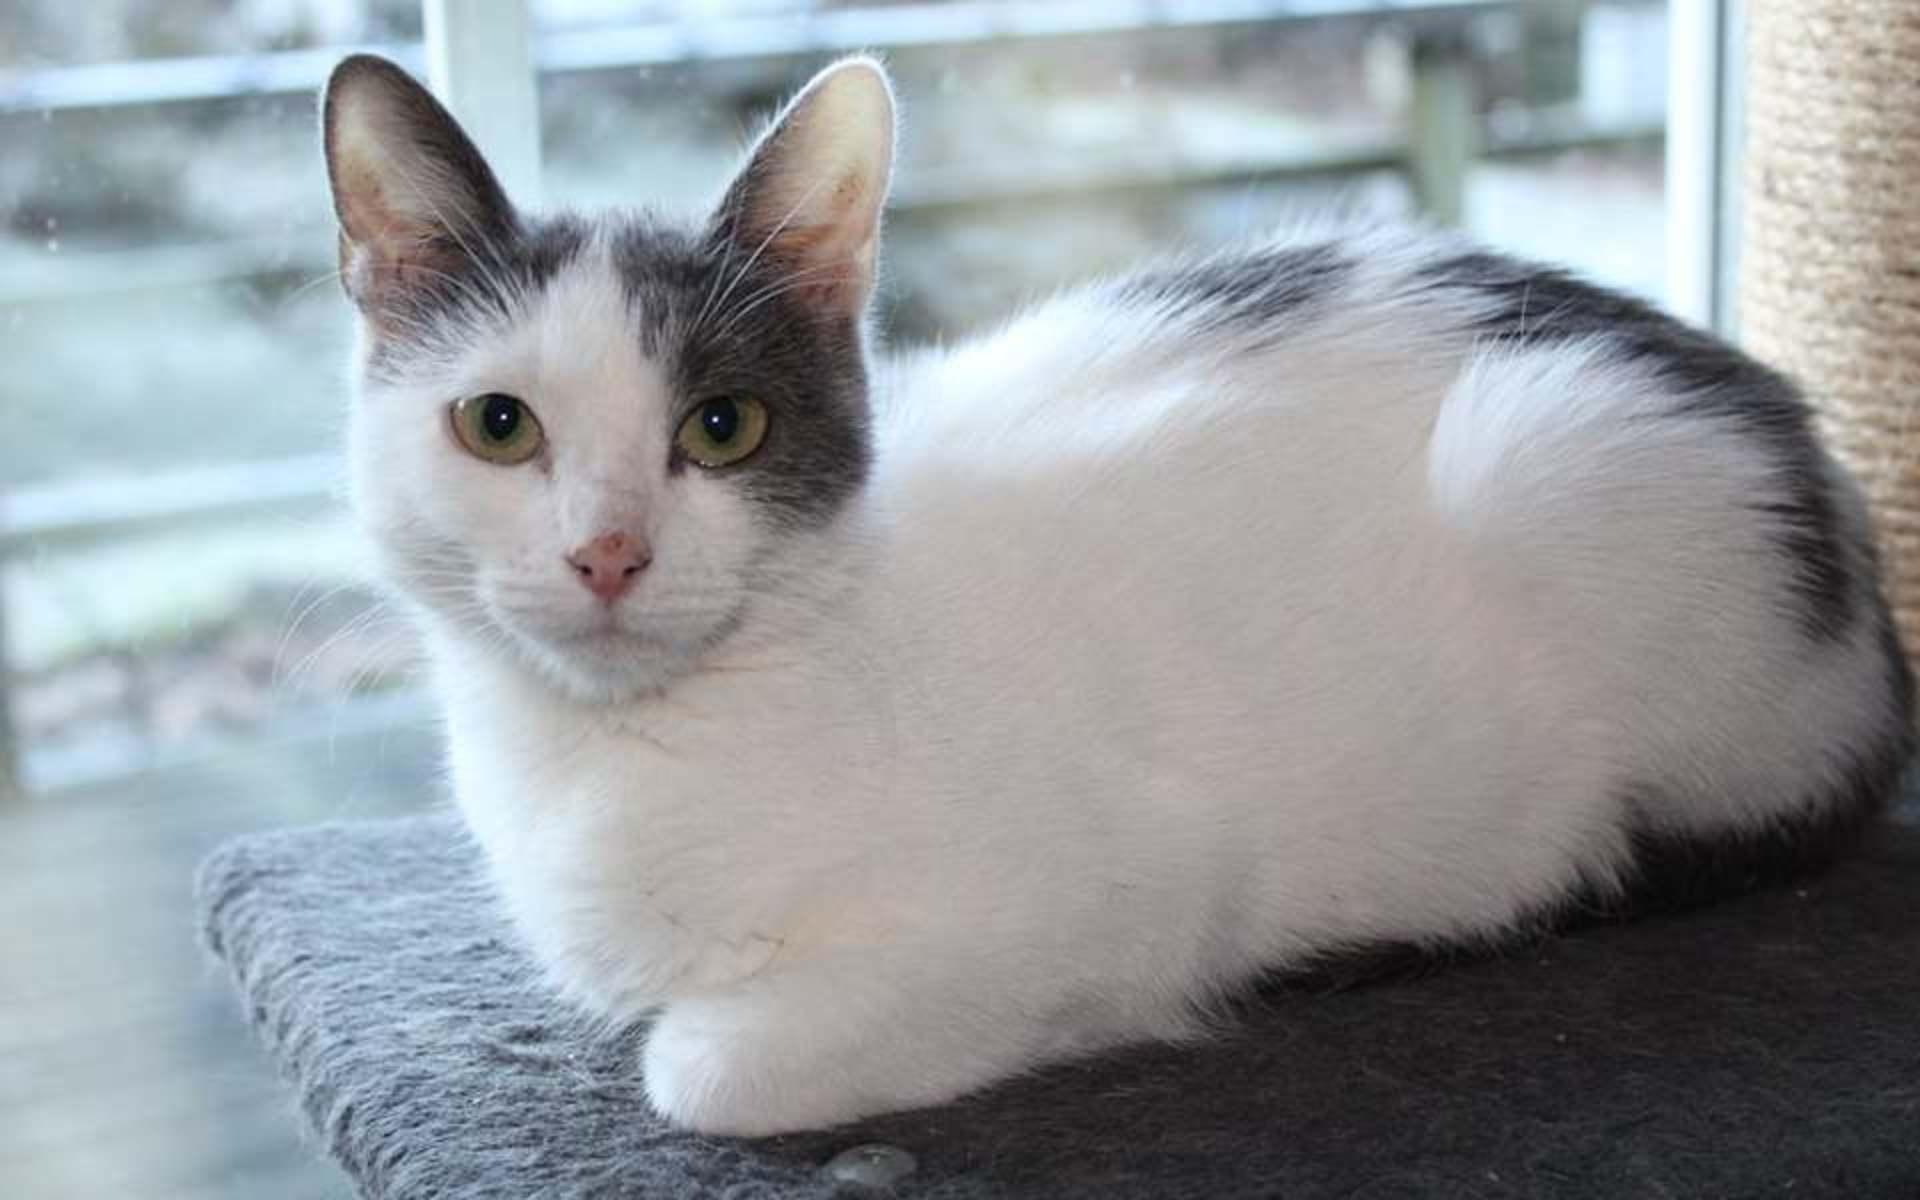 Maja föddes 2018 och är en späd liten katt som fostrat många kattungar. Mini är en av dem, och de behöver ett gemensamt hem eftersom de är oskiljaktiga. 